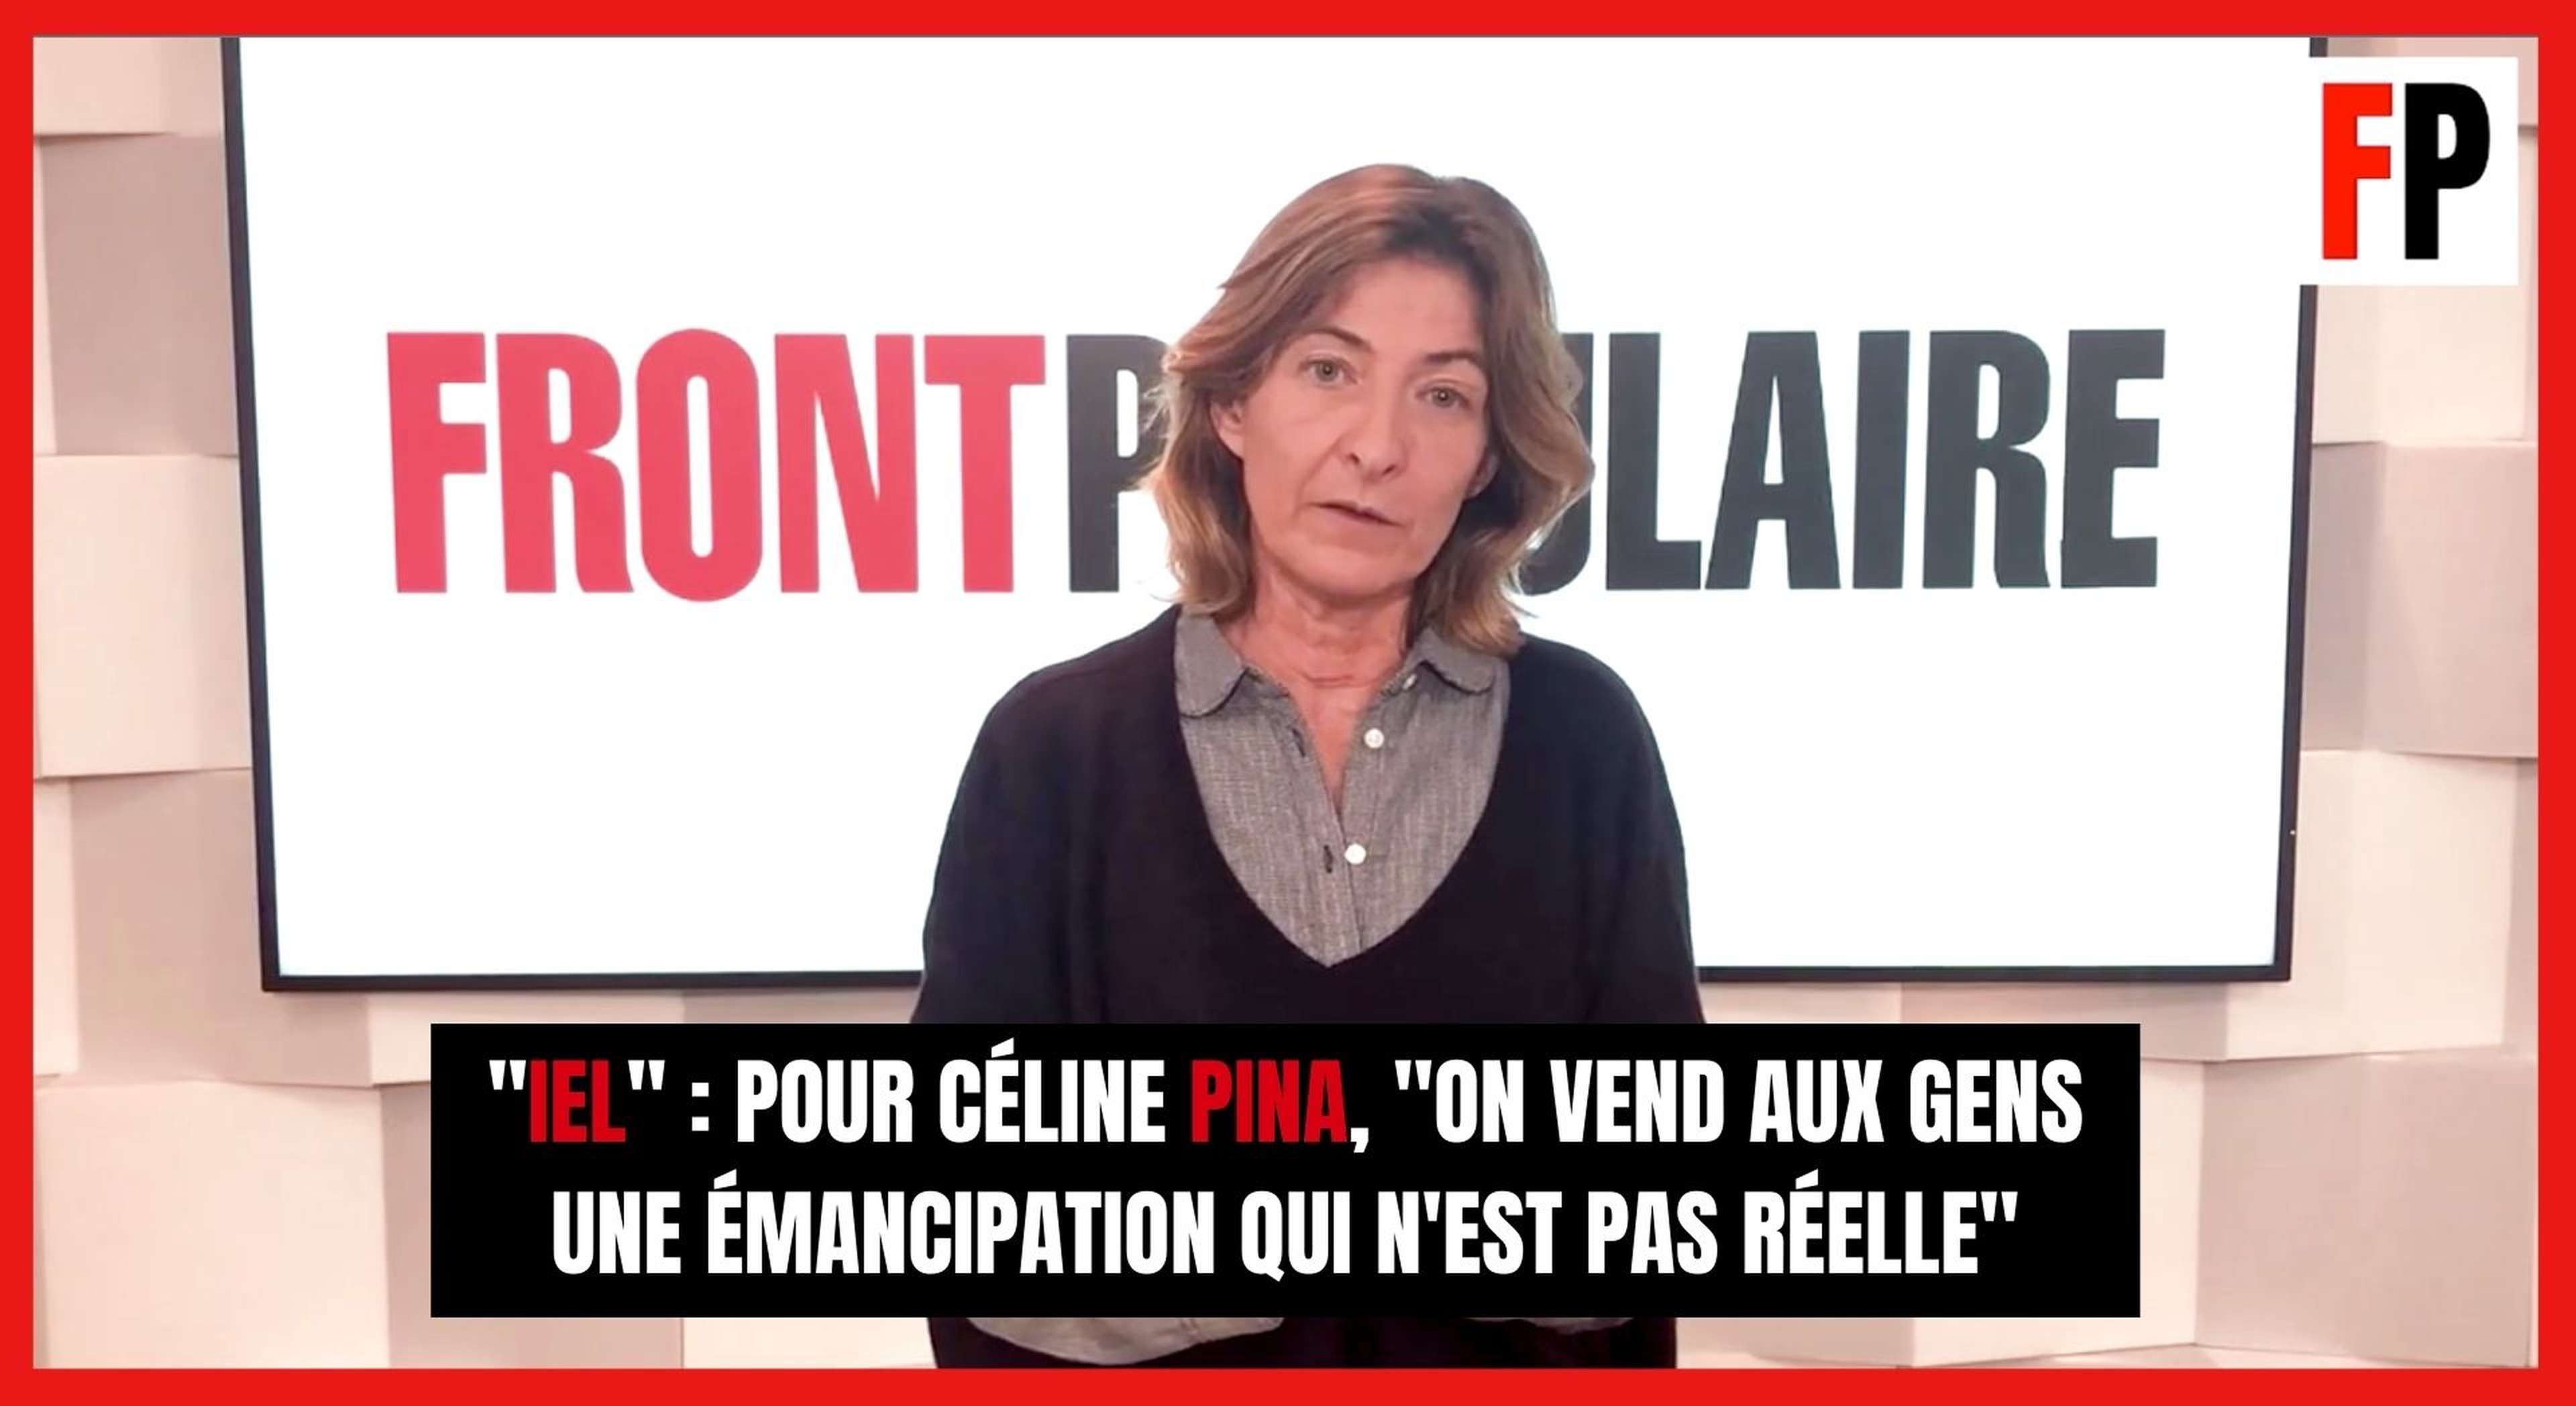 Céline Pina sur le pronom "iel" : "On vend aux gens une émancipation qui n'est pas réelle"